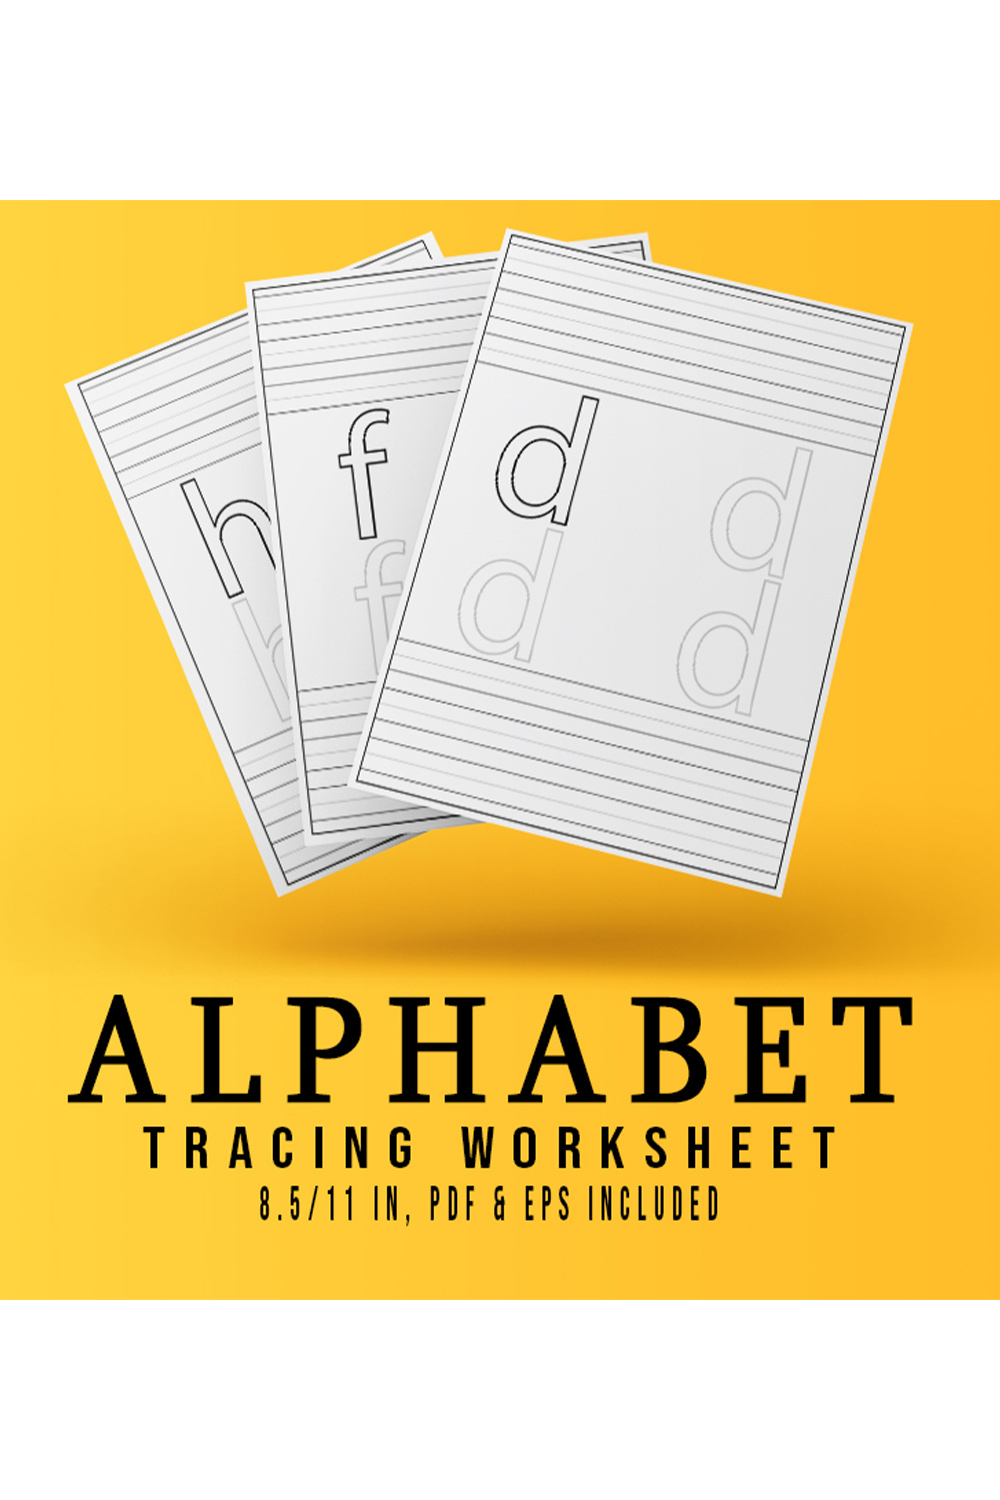 Alphabet Tracing Worksheets Design pinterest image.